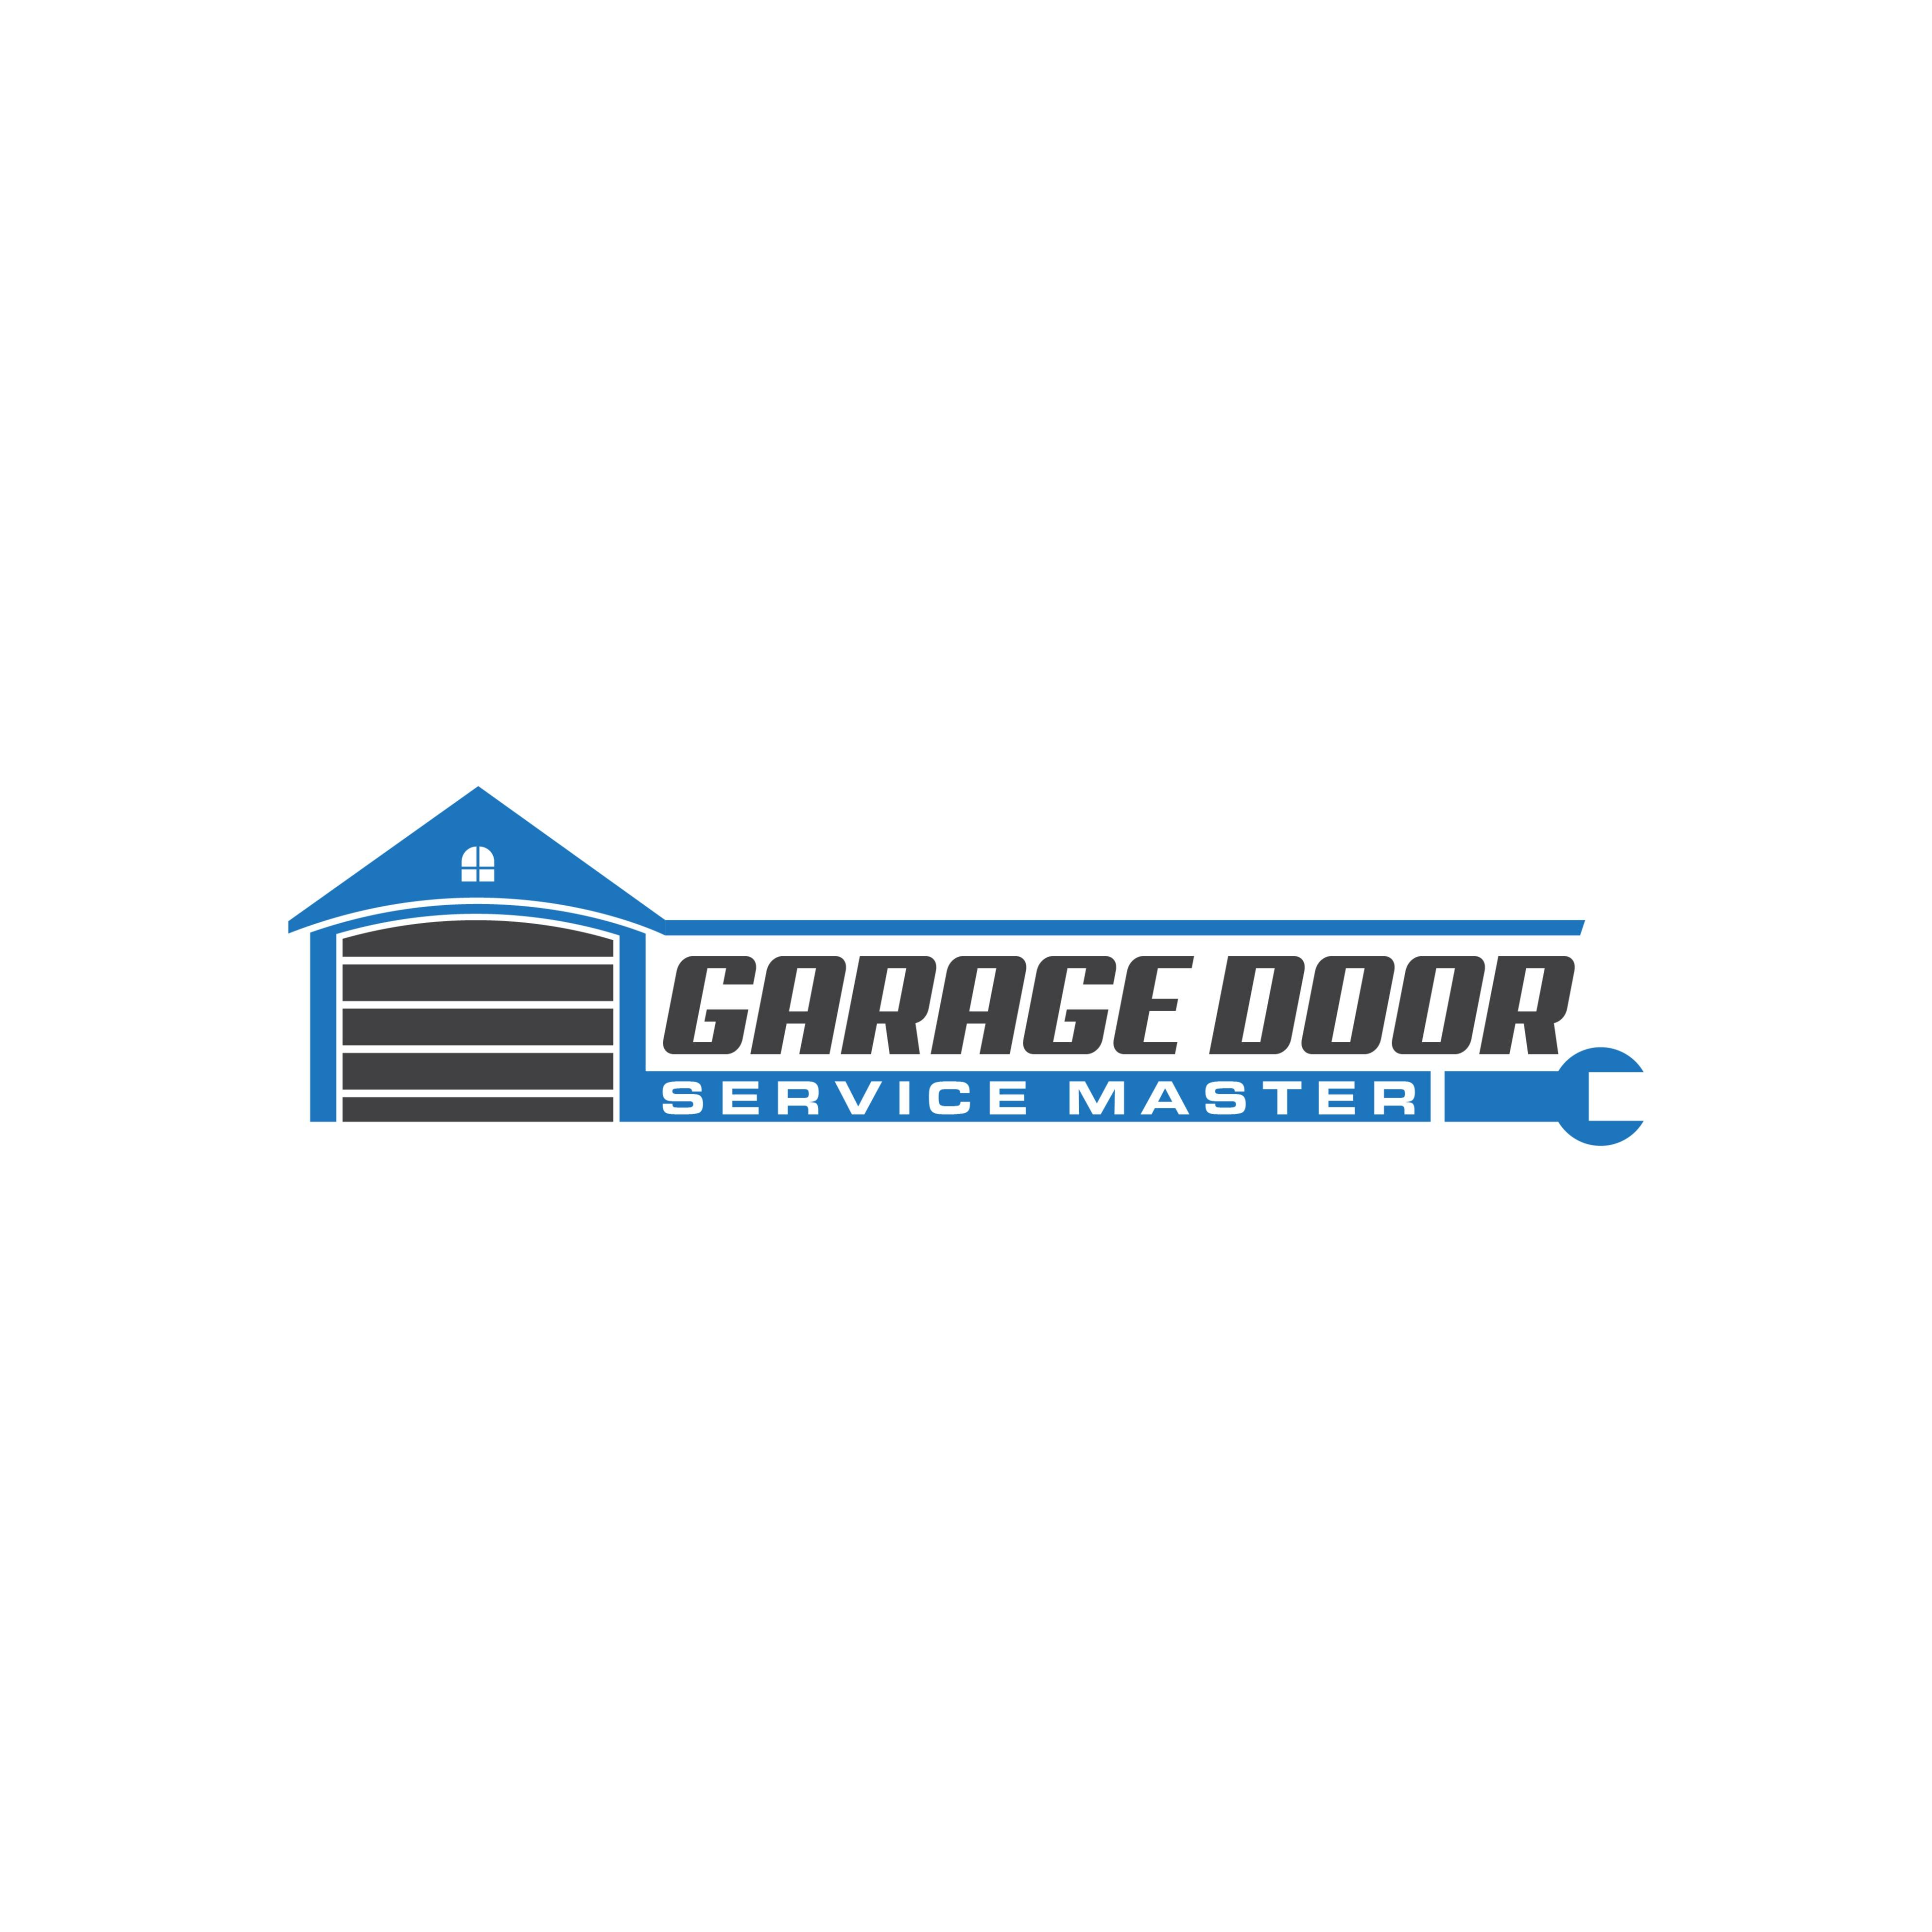 Garage Door Service Master